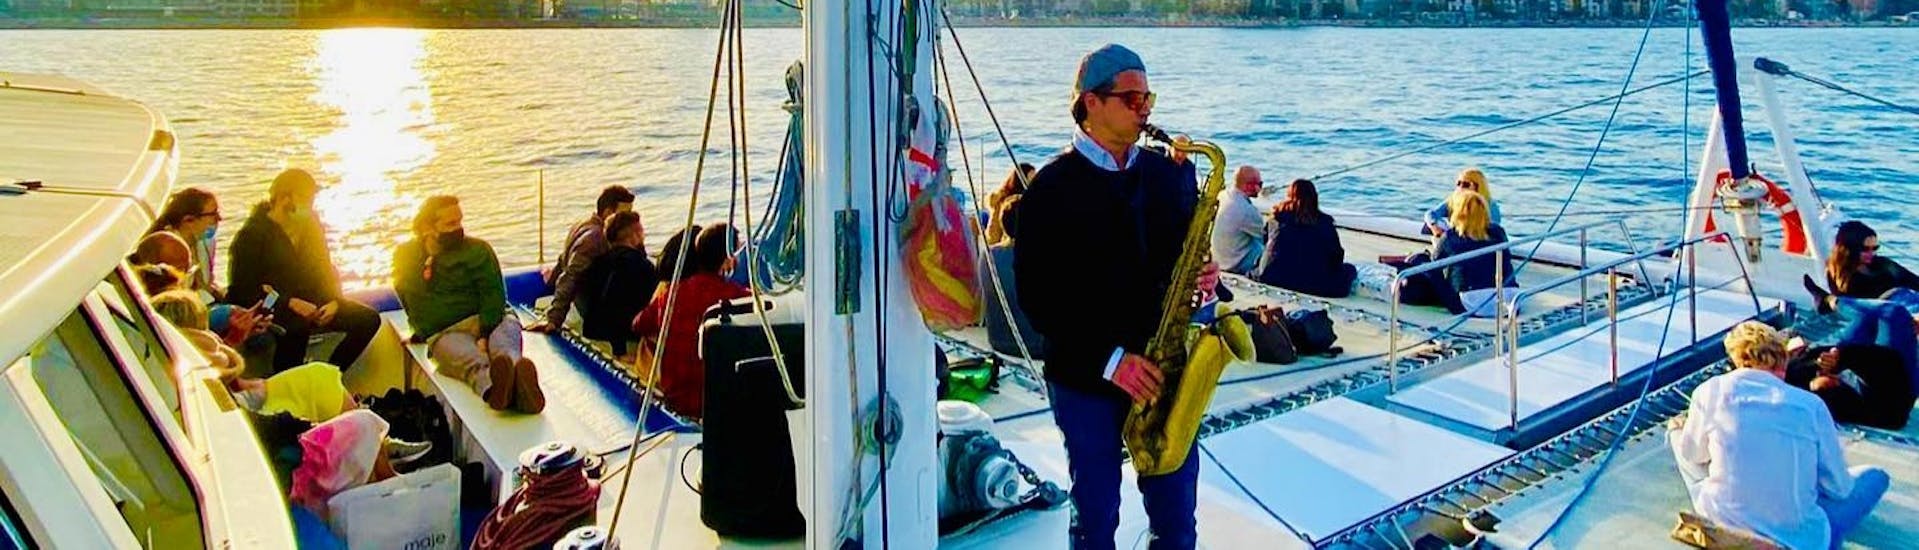 Un groupe profitant de la musique en direct à bord de notre bateau lors d'une Balade en bateau autour de Barcelone avec Musique live avec Catamaran Orsom Barcelona.